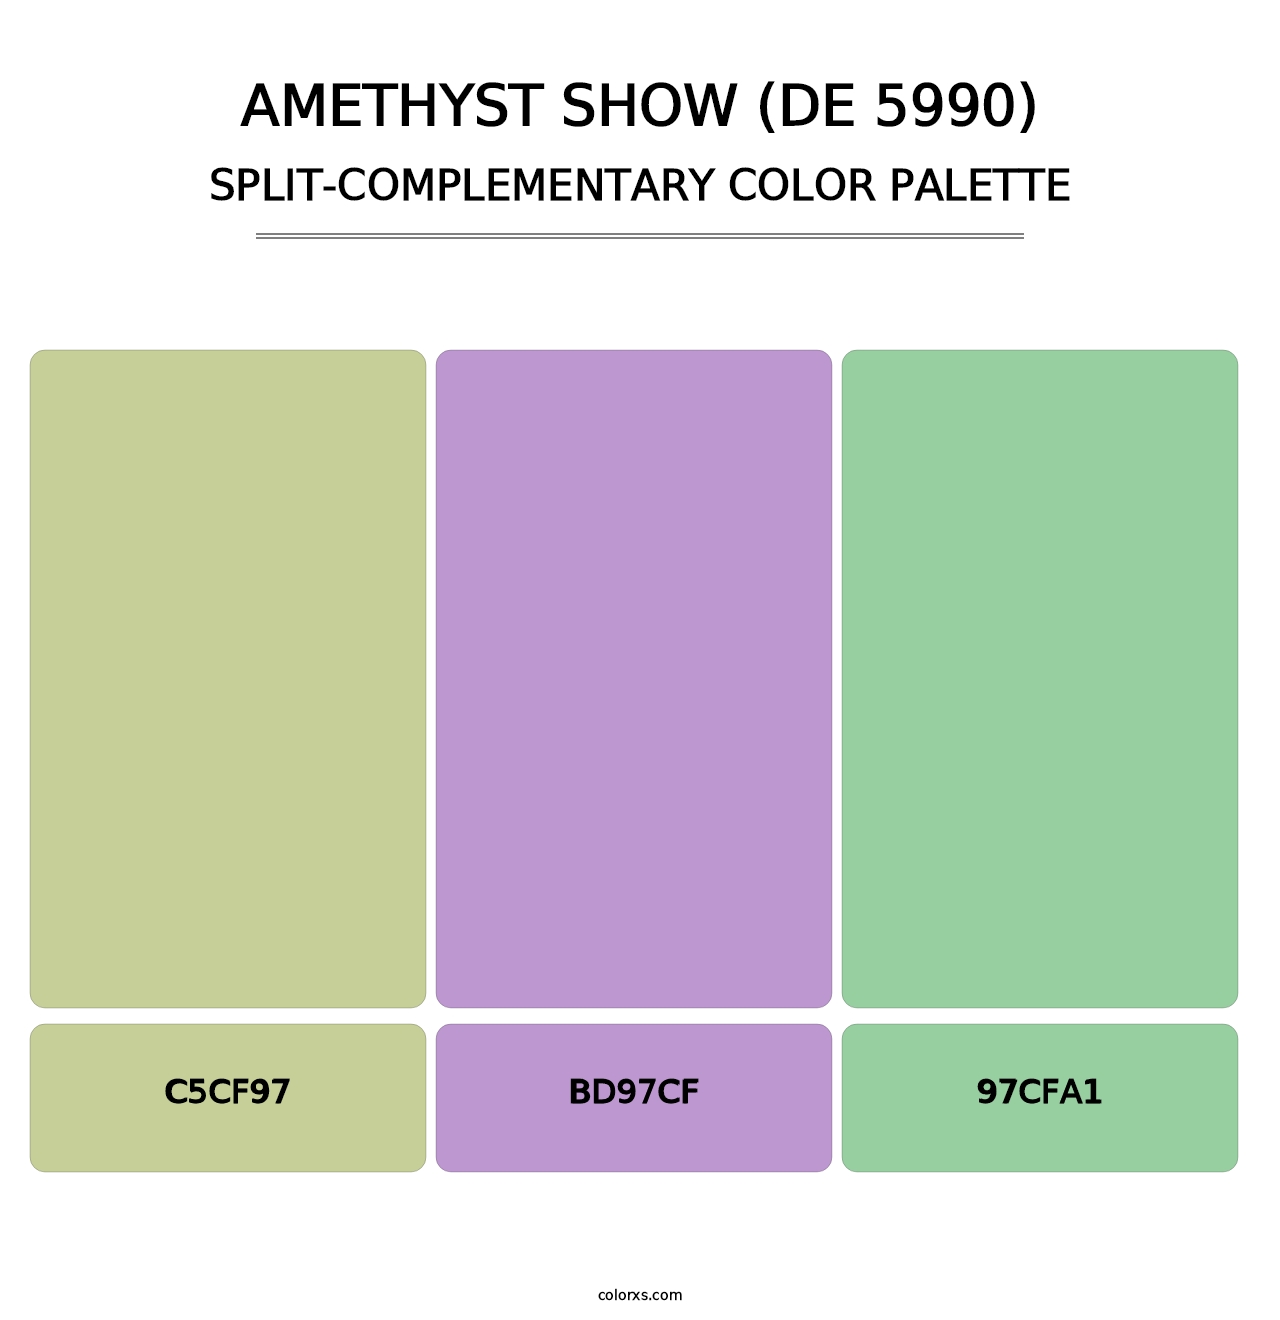 Amethyst Show (DE 5990) - Split-Complementary Color Palette